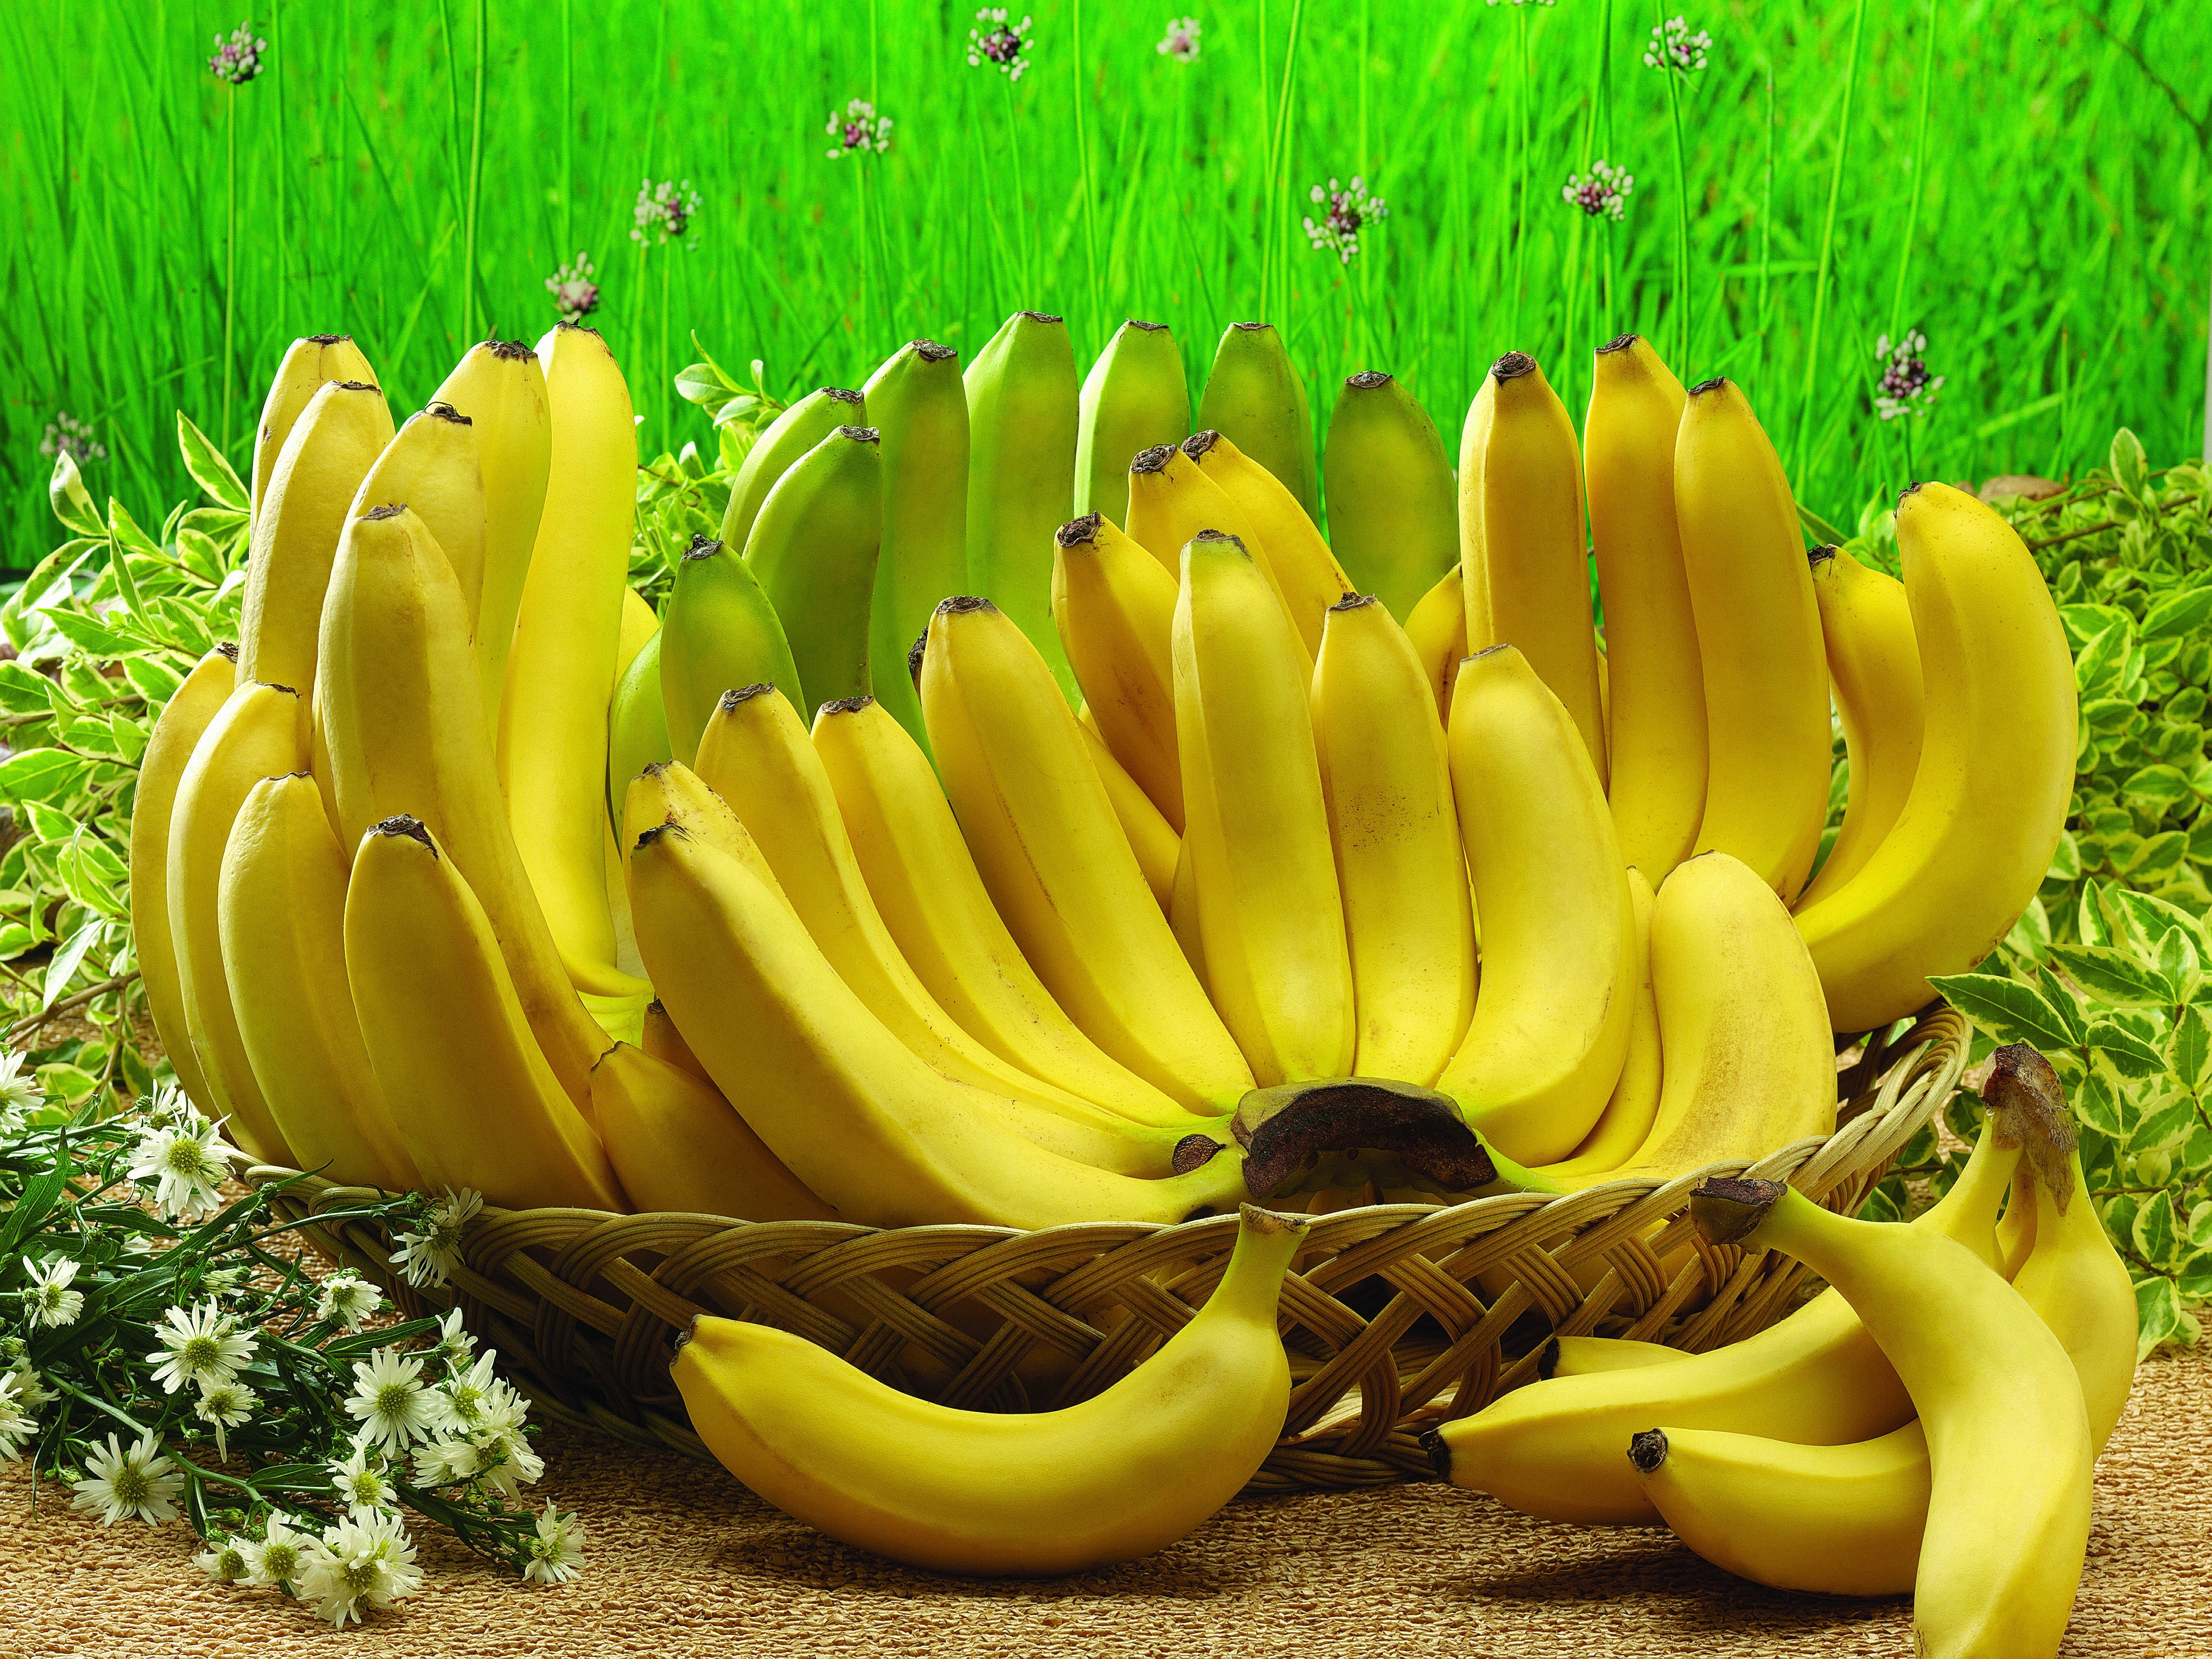 バナナの壁紙,バナナファミリー,バナナ,黄,自然食品,工場